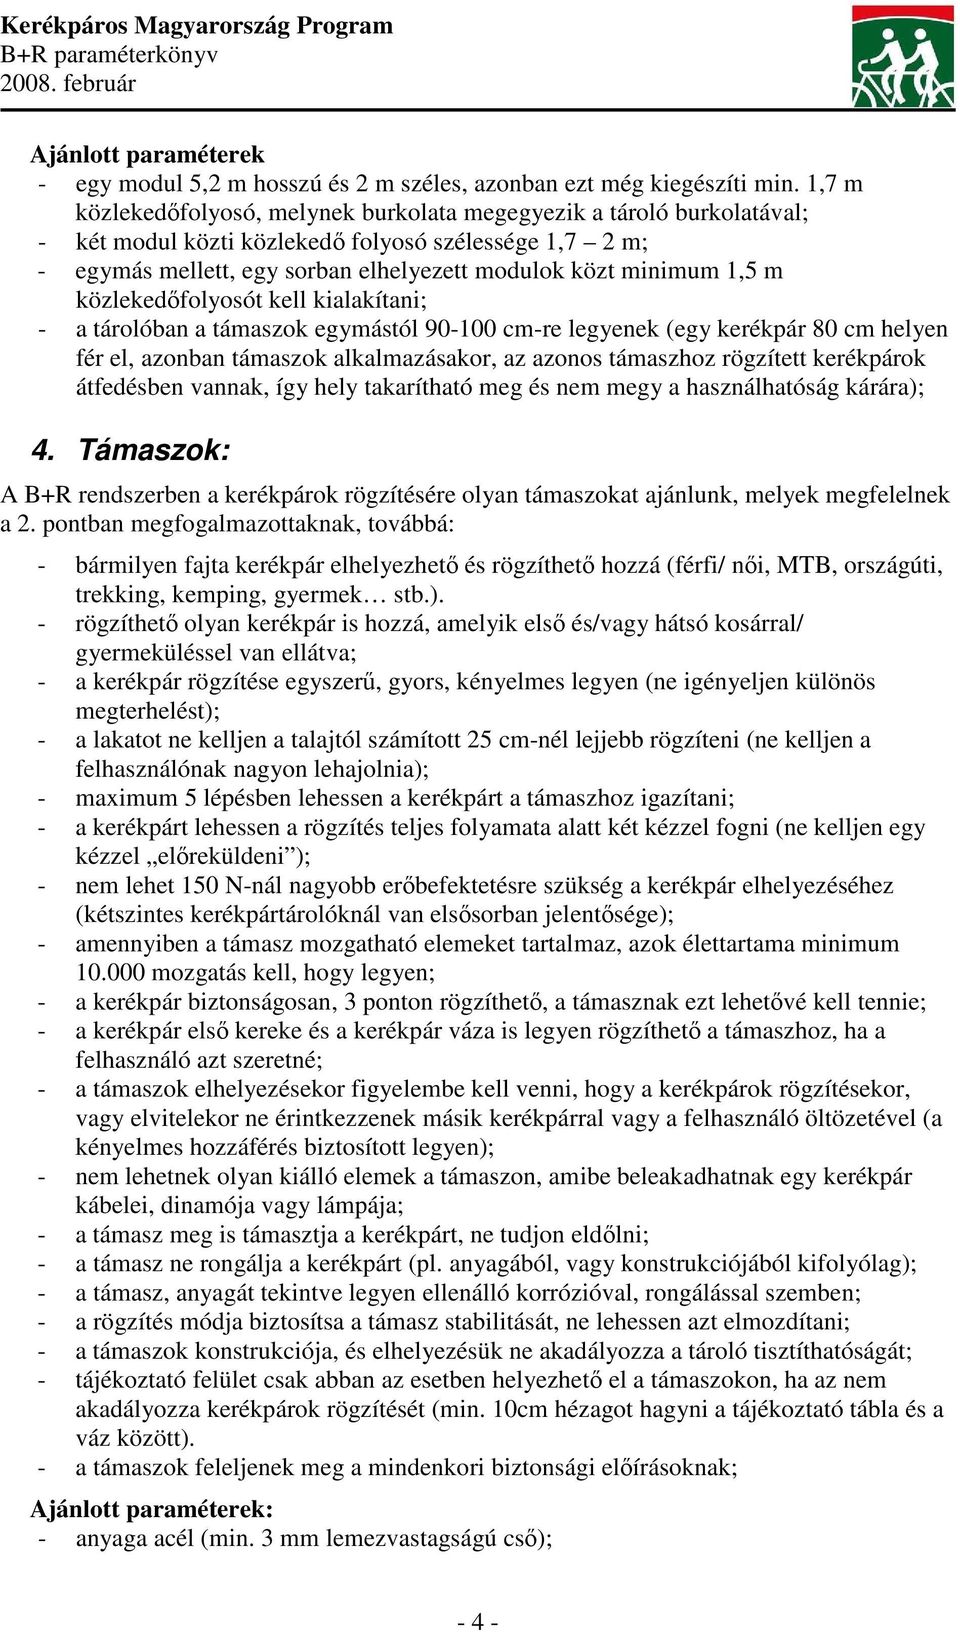 A Kerékpáros Magyarország Program - PDF Free Download